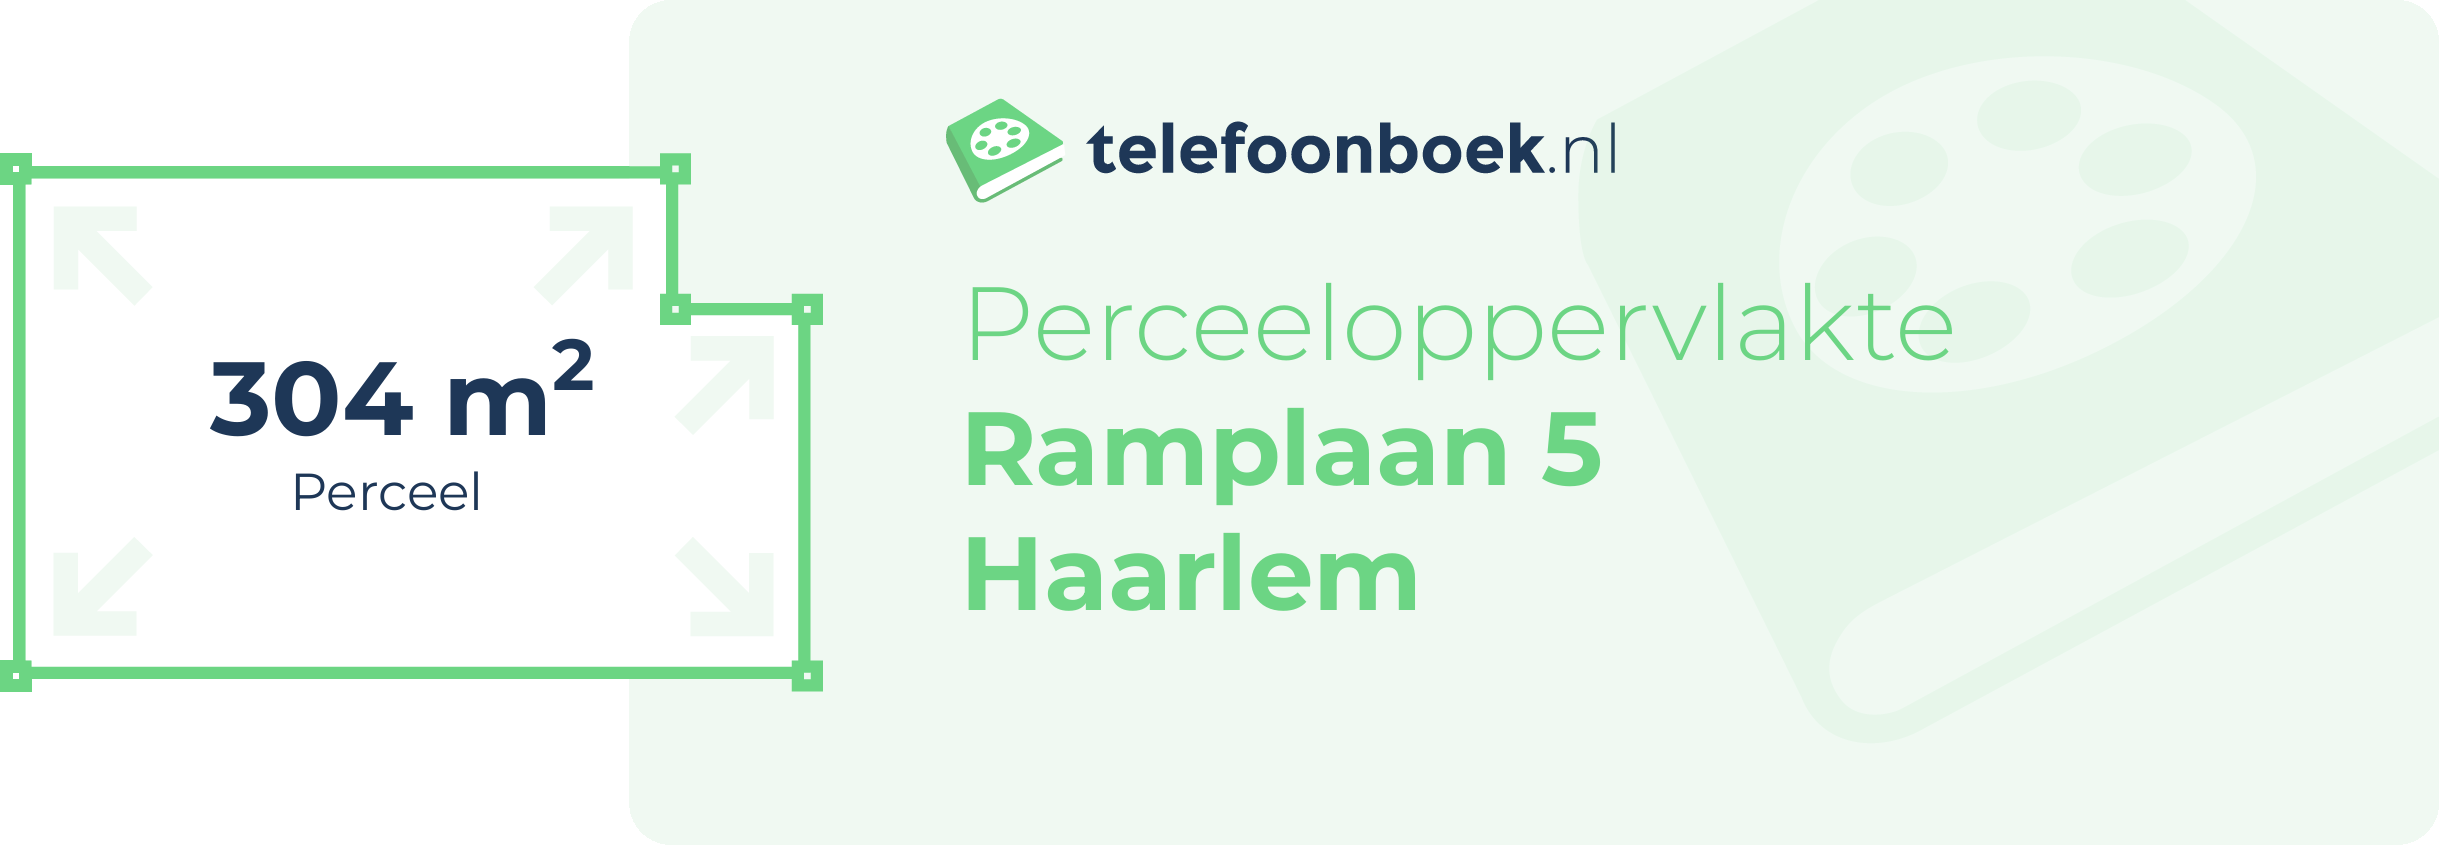 Perceeloppervlakte Ramplaan 5 Haarlem